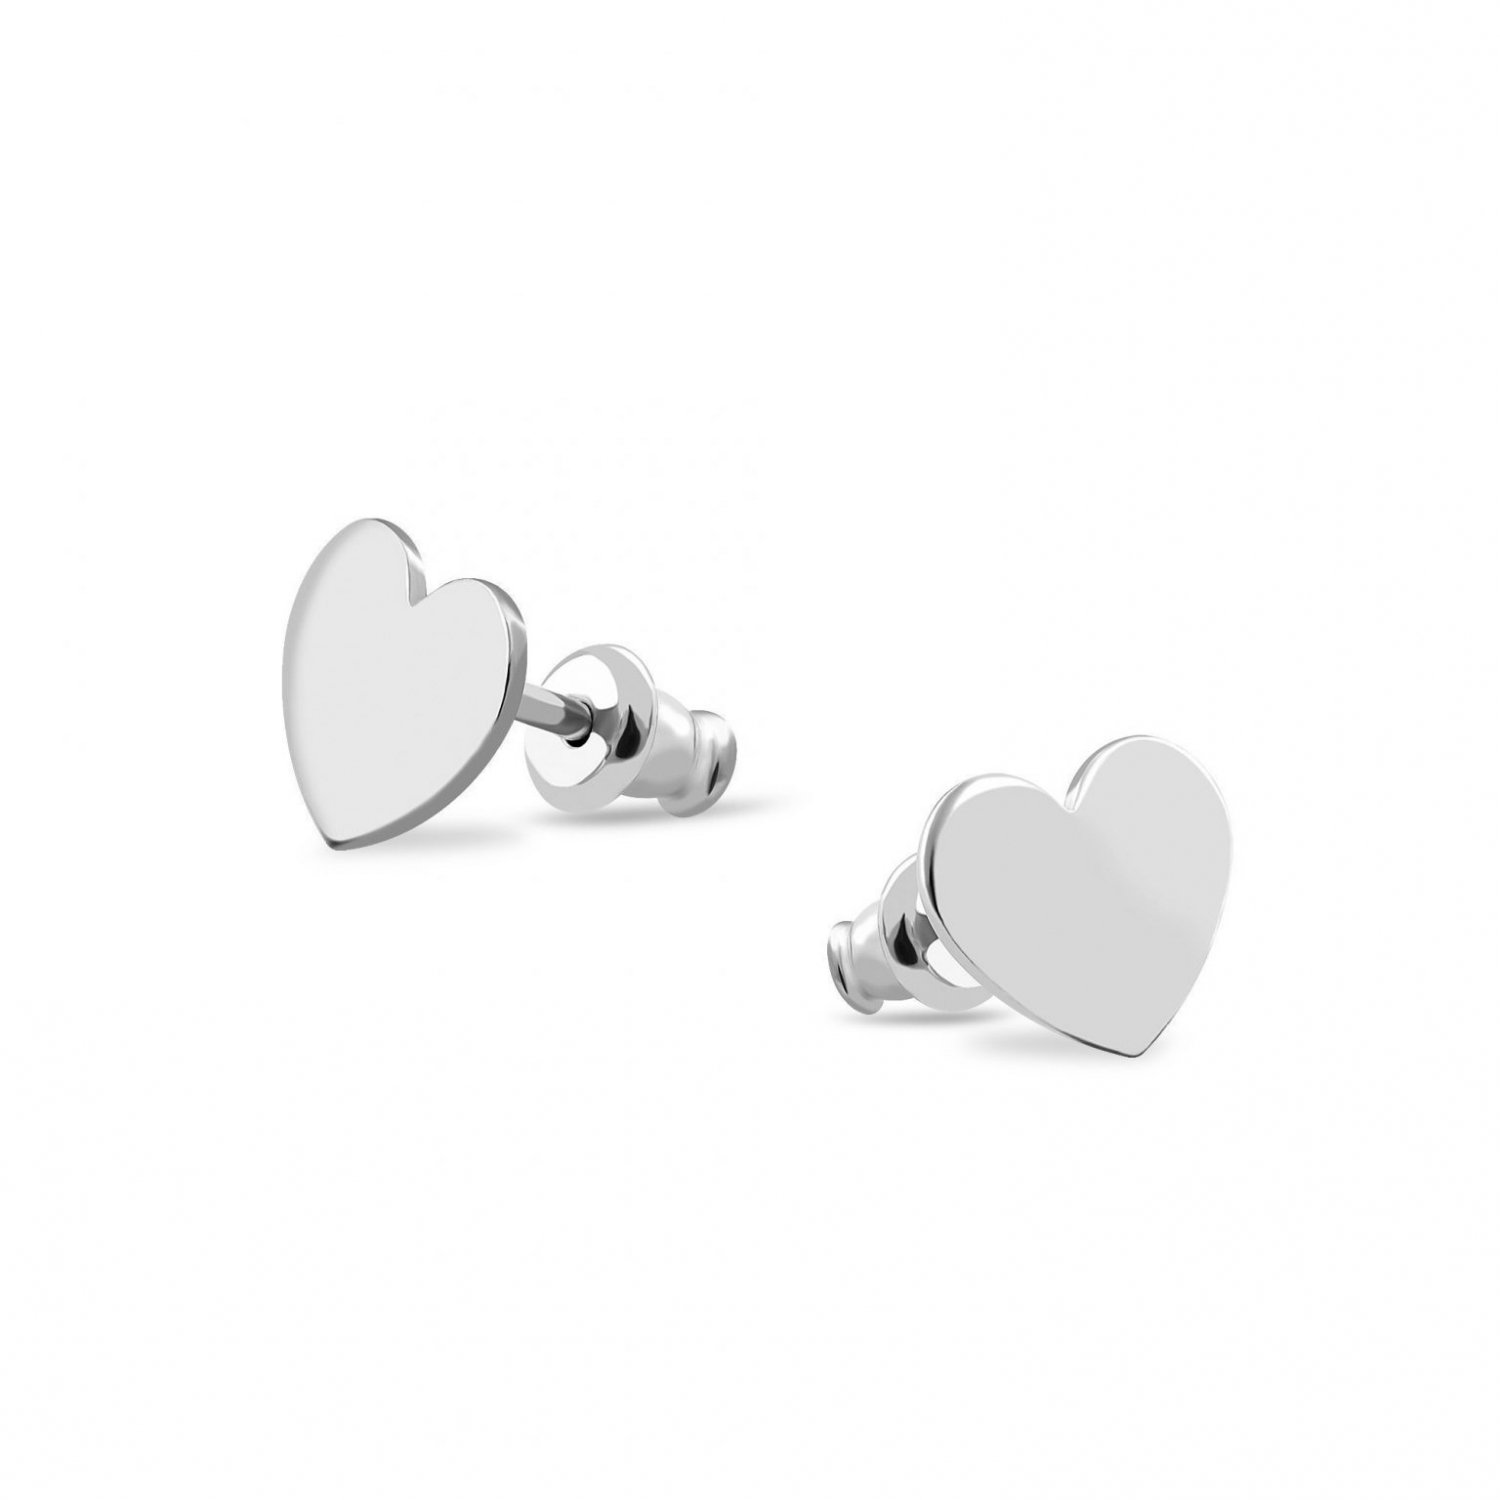 Svitozar earrings 573E